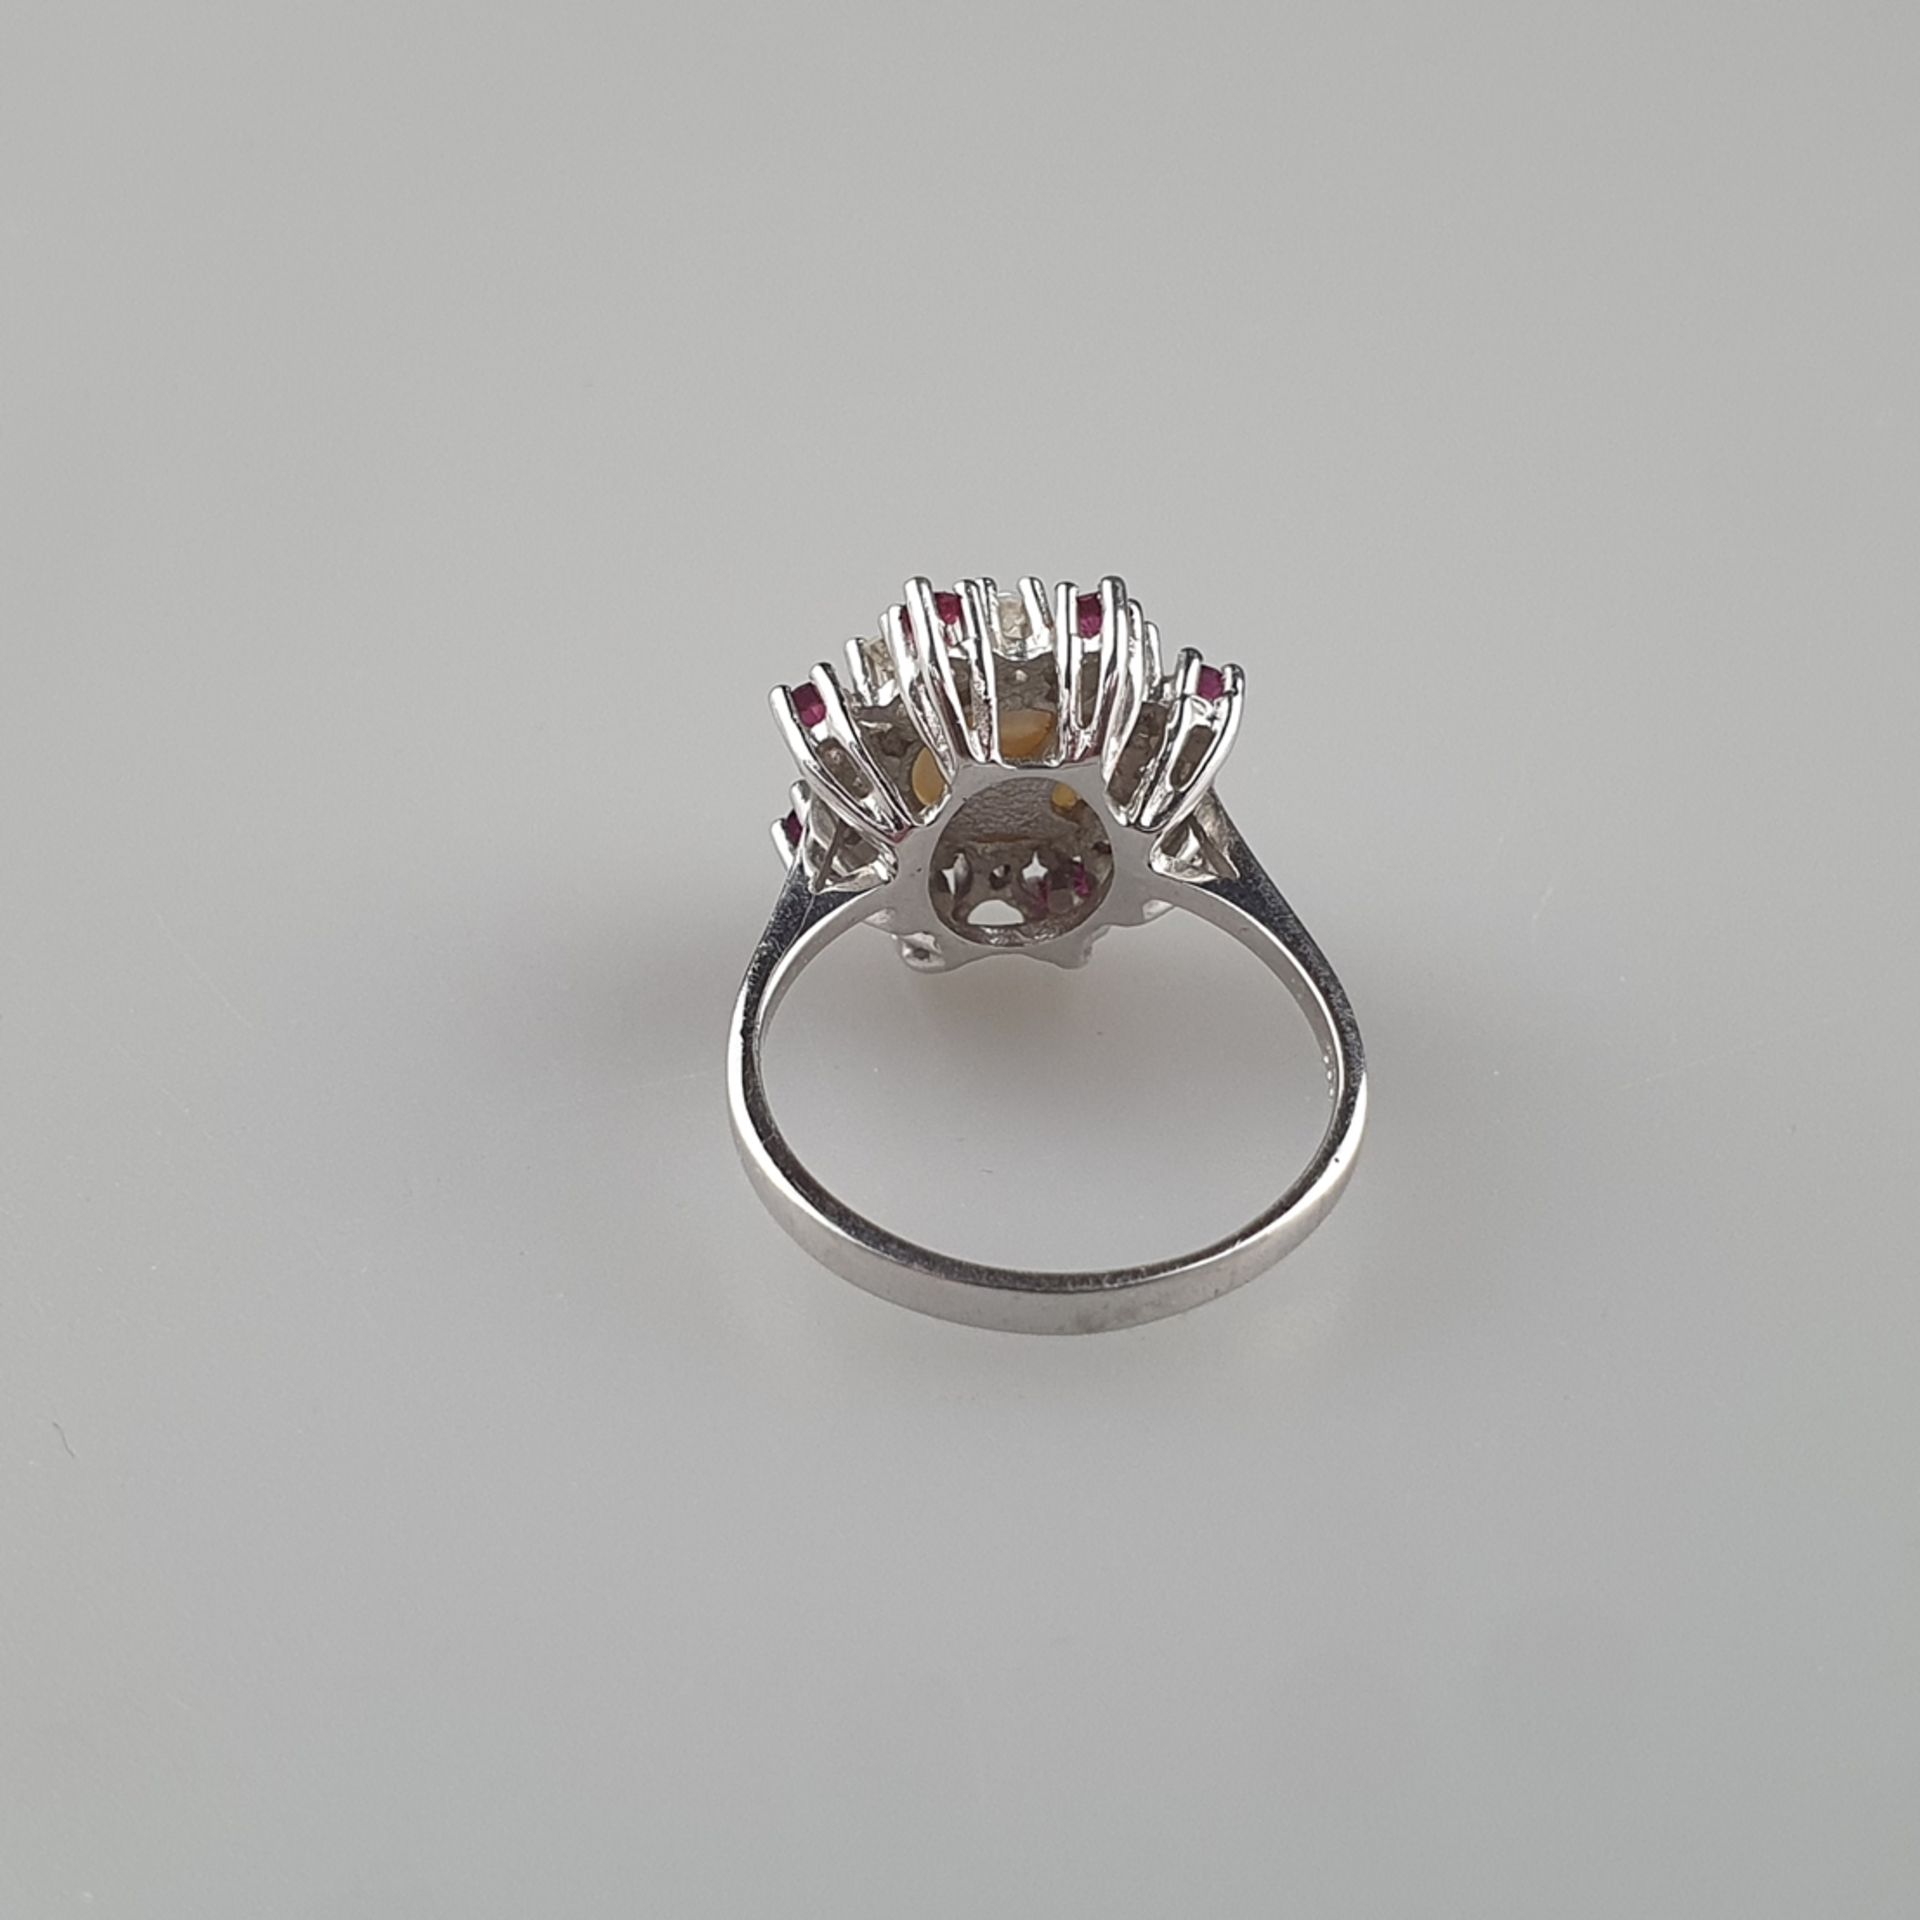 Perlring mit Diamant- und Rubinbesatz - Gelbgold 585/000 (14K), gestempelt, zentrale Perle von 8mm- - Bild 5 aus 7